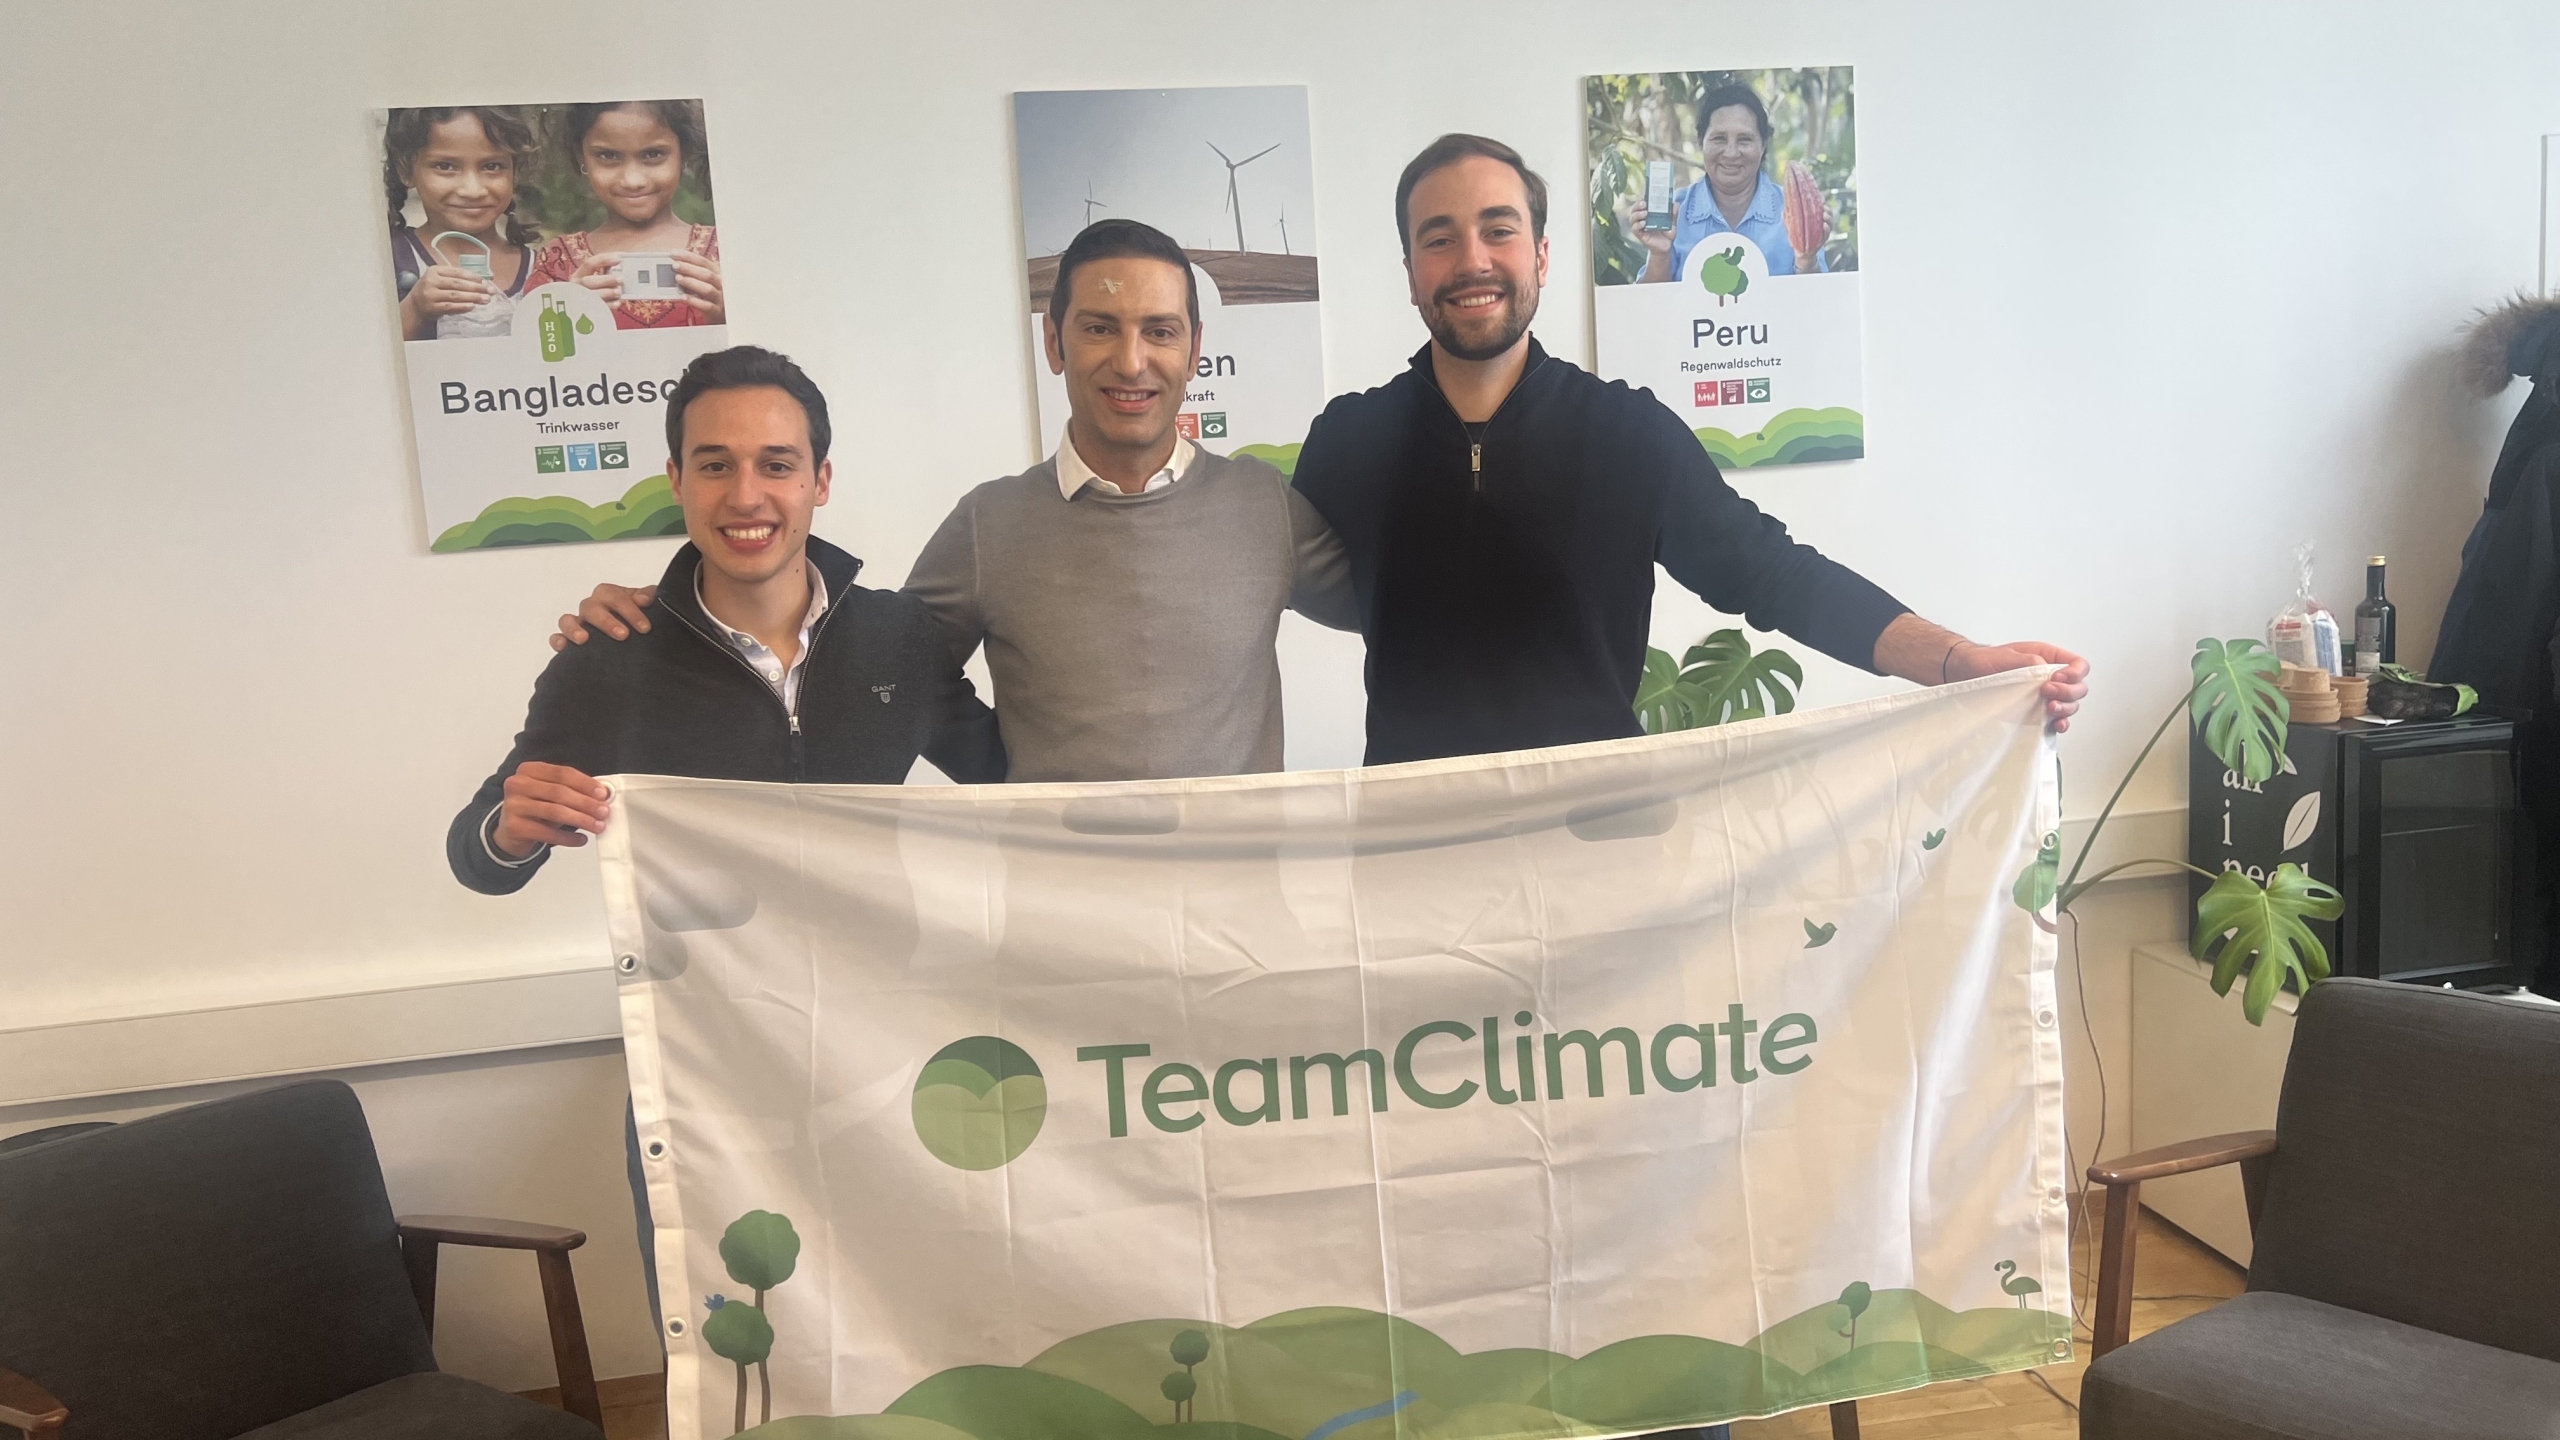 ClimateTrade förvärvar TeamClimate för att erbjuda prenumerationsbaserad koldioxidkompensation